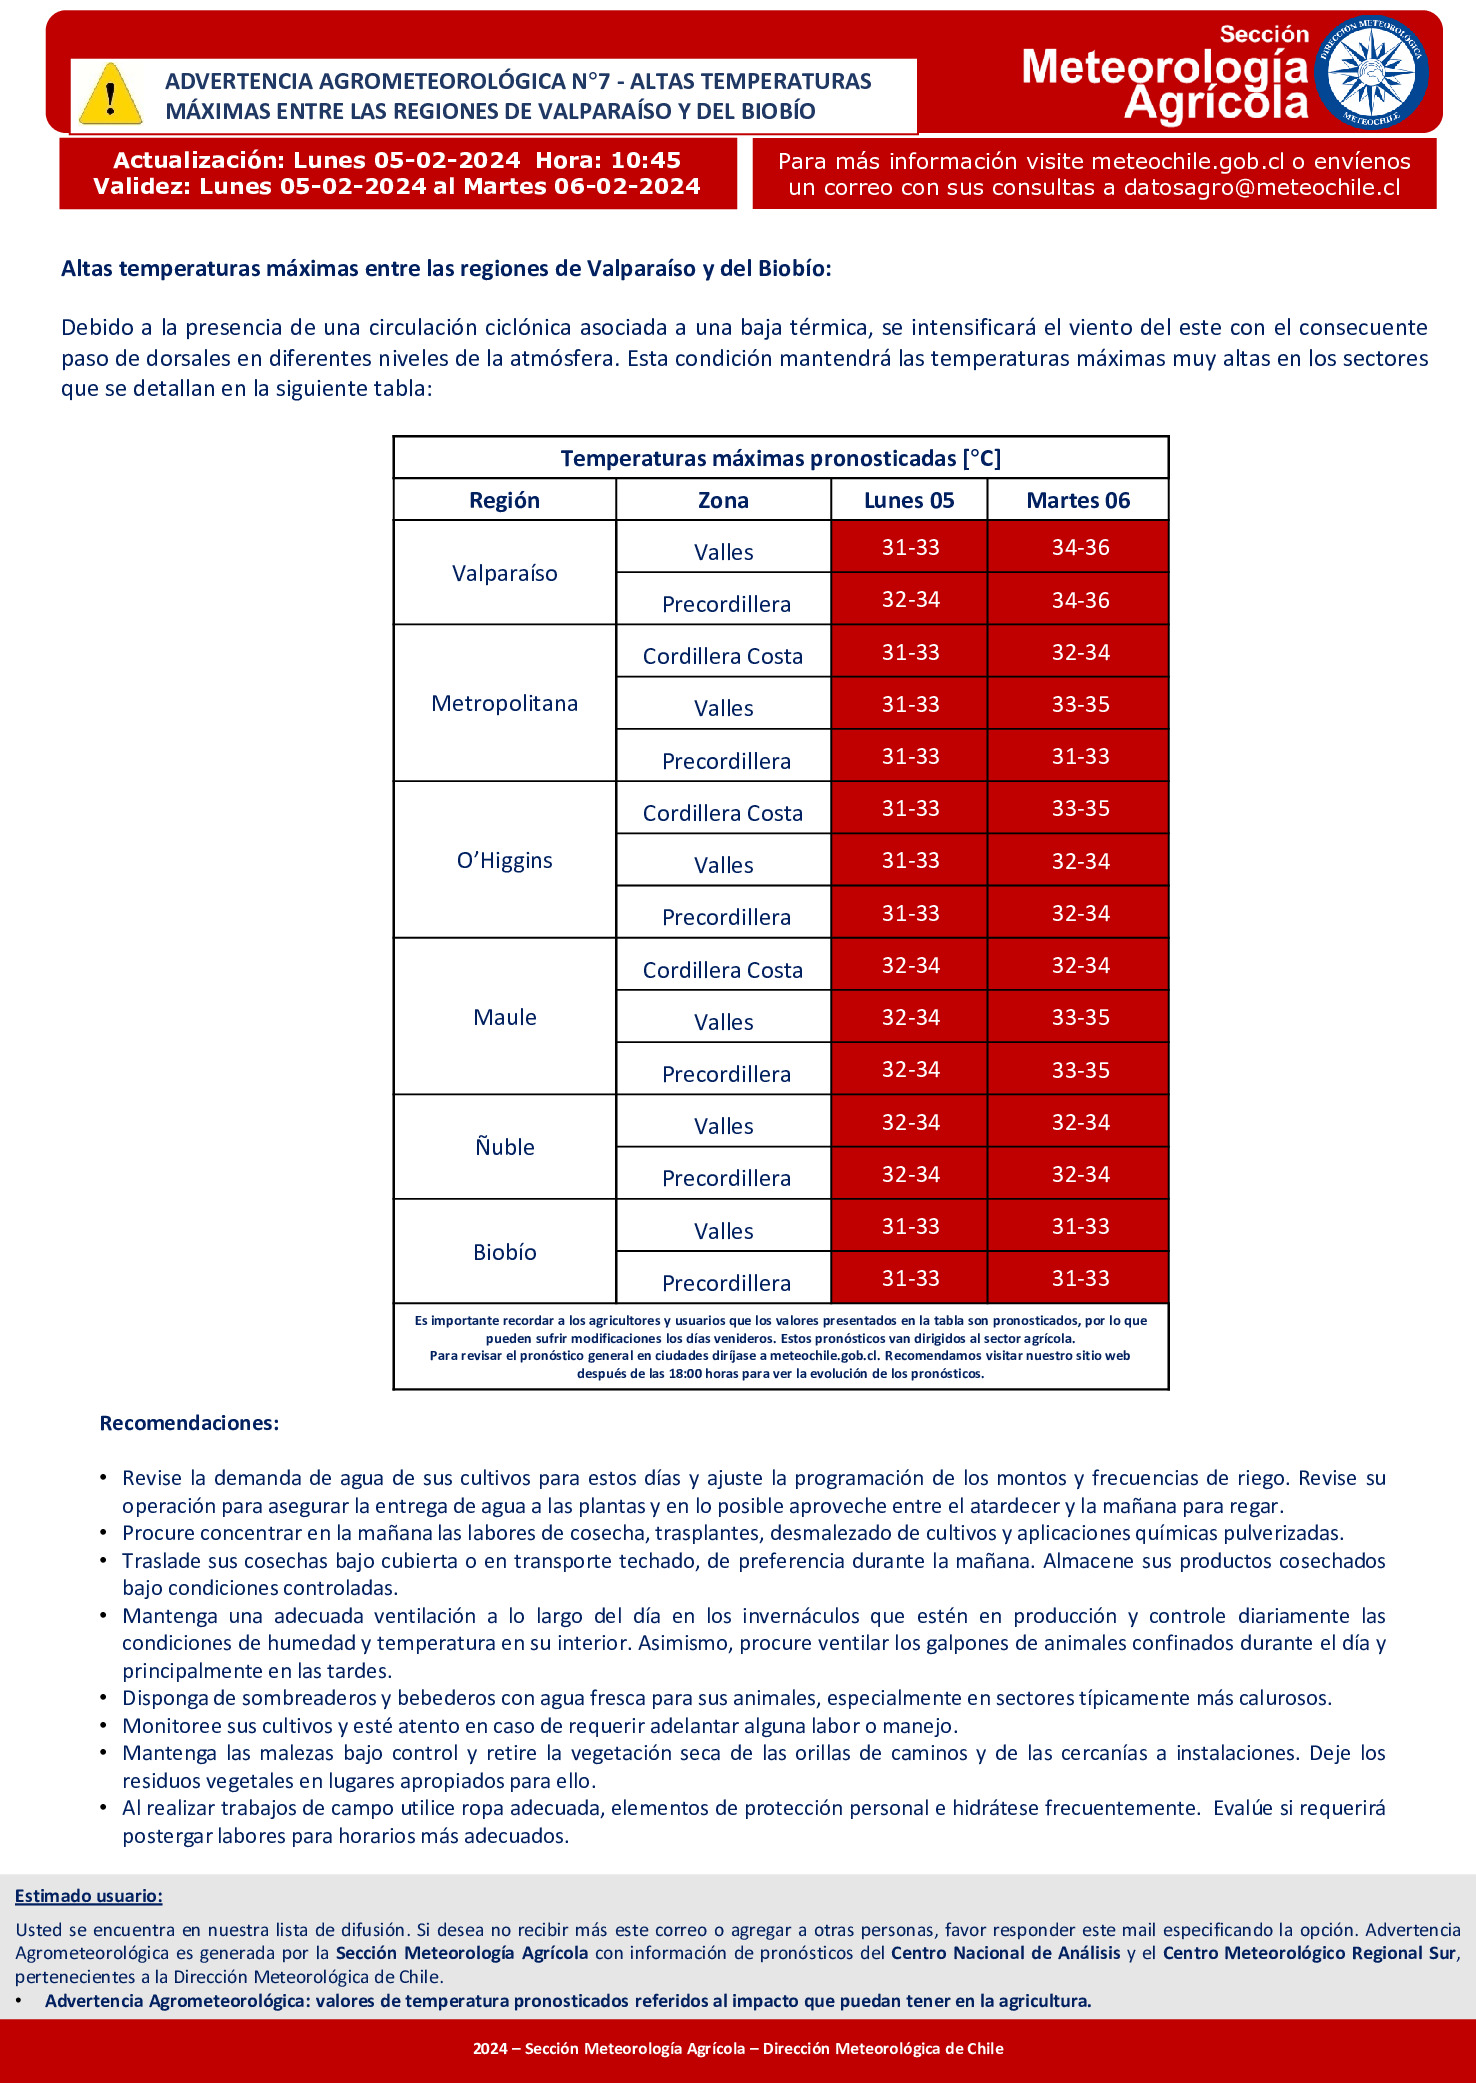 Advertencia Agrometeorológica: [05/feb 10:44] Altas temperaturas máximas entre las regiones de Valparaíso y Biobío